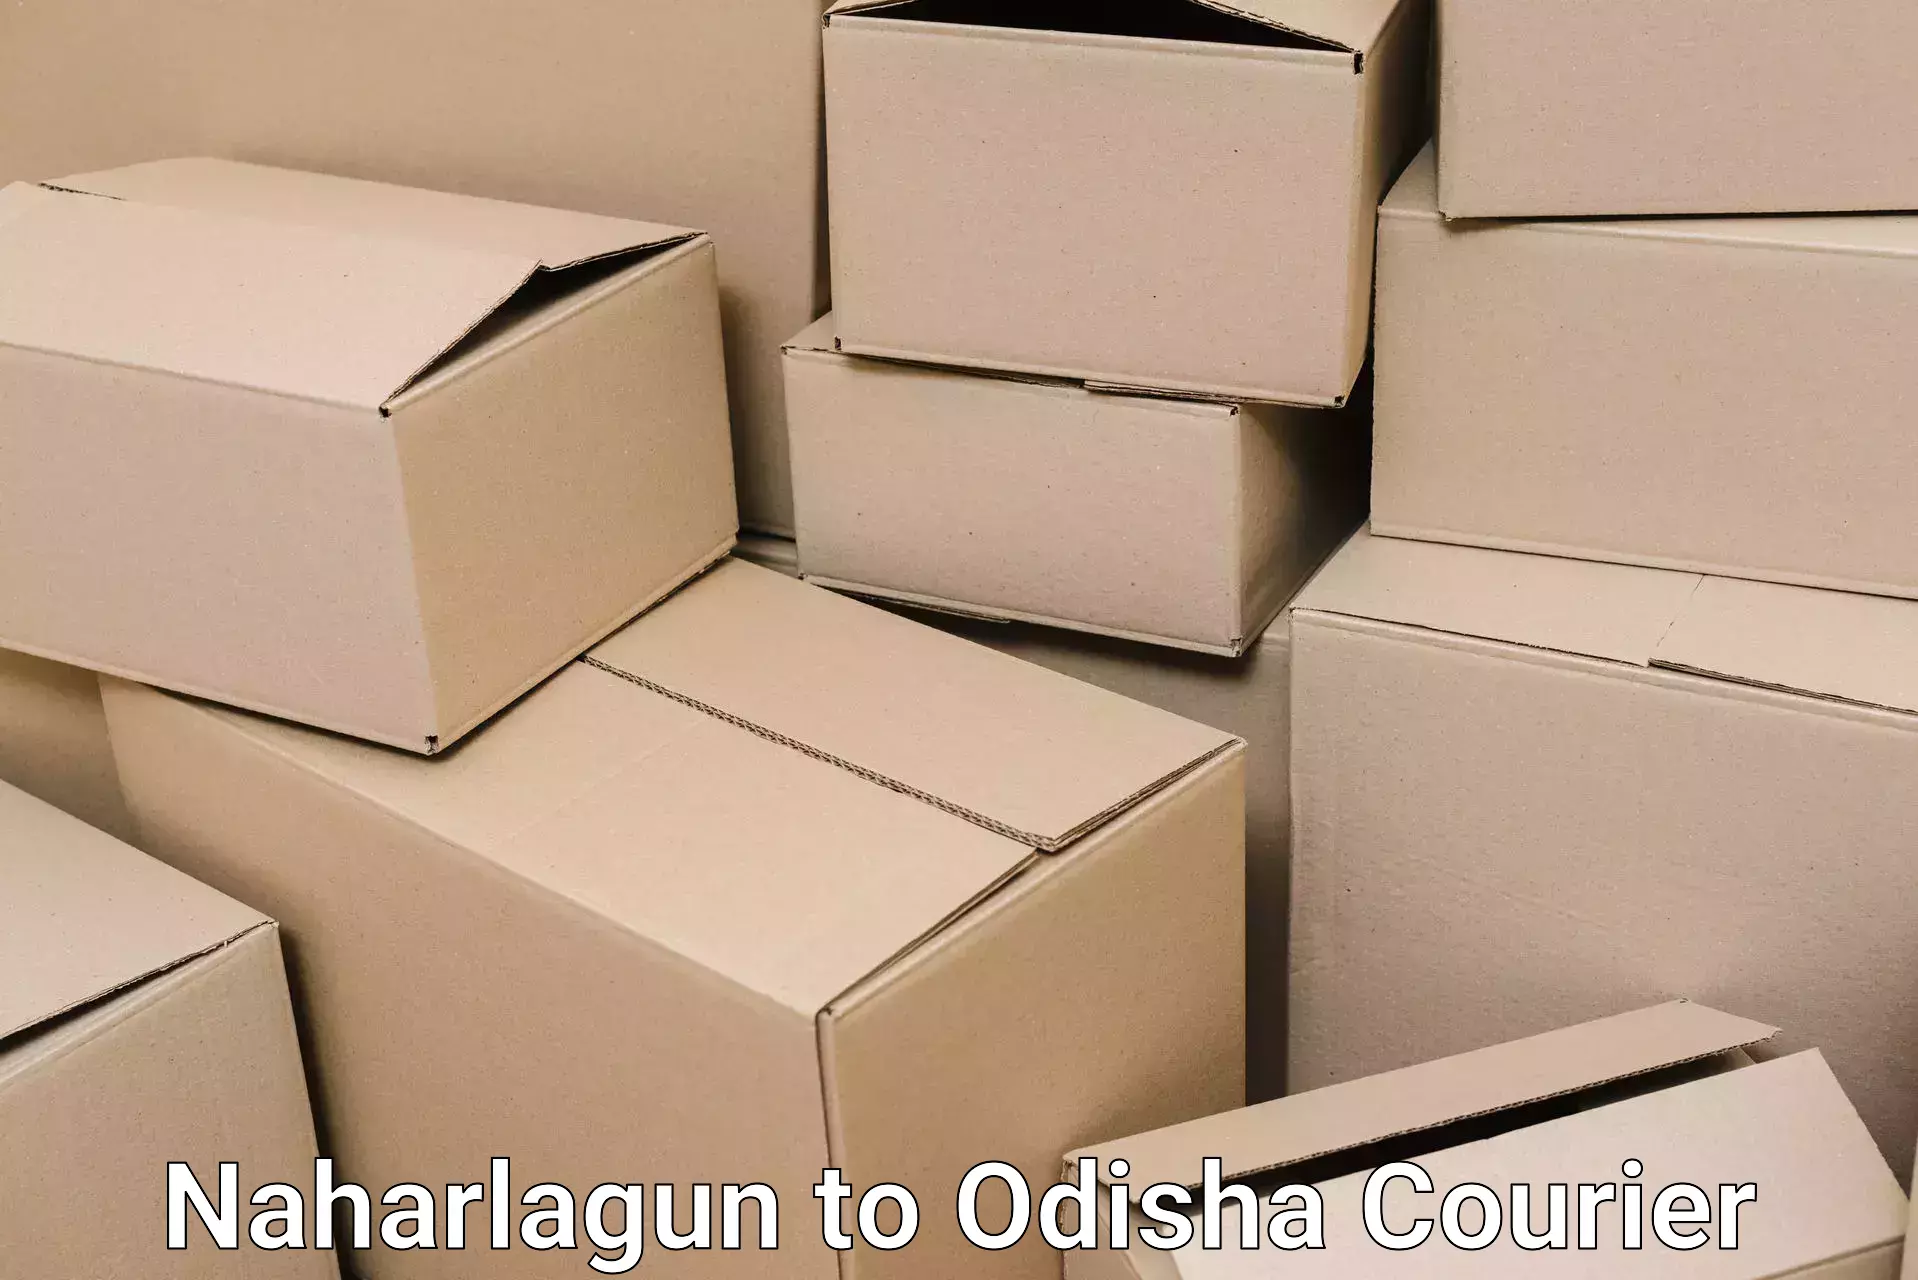 Skilled furniture movers Naharlagun to Bhubaneswar